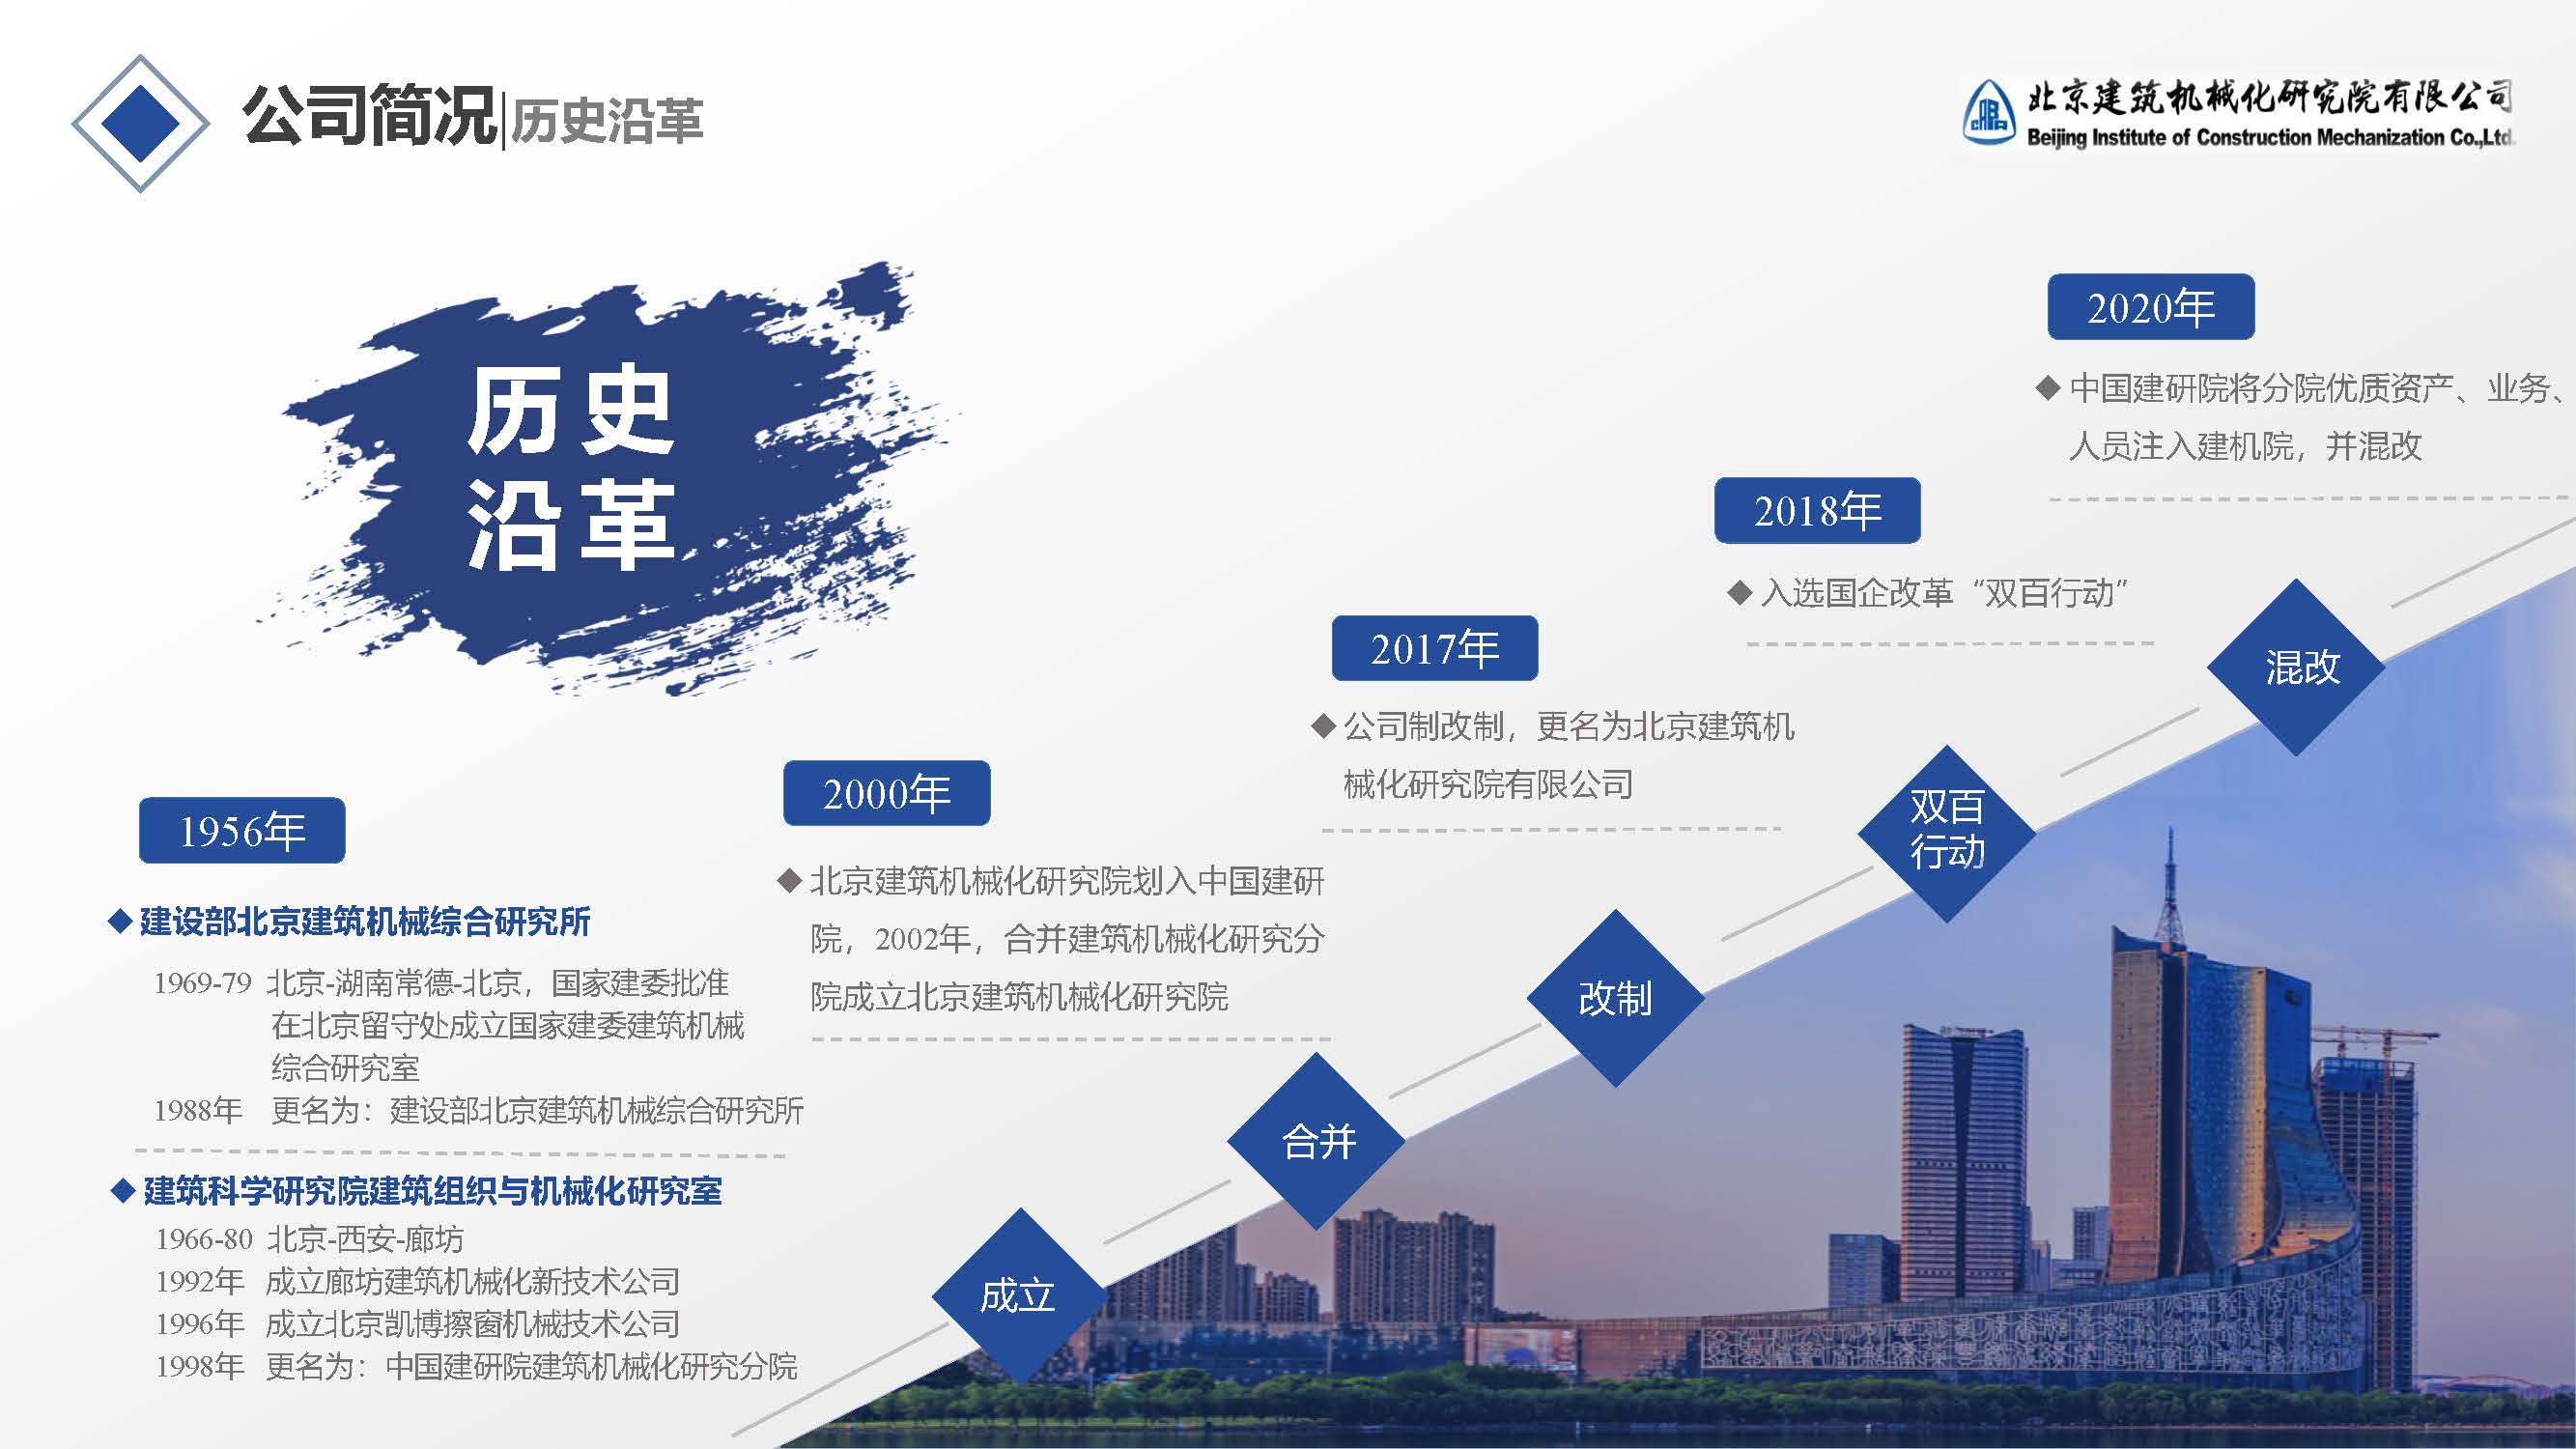  北京建筑机械化研究院有限公司